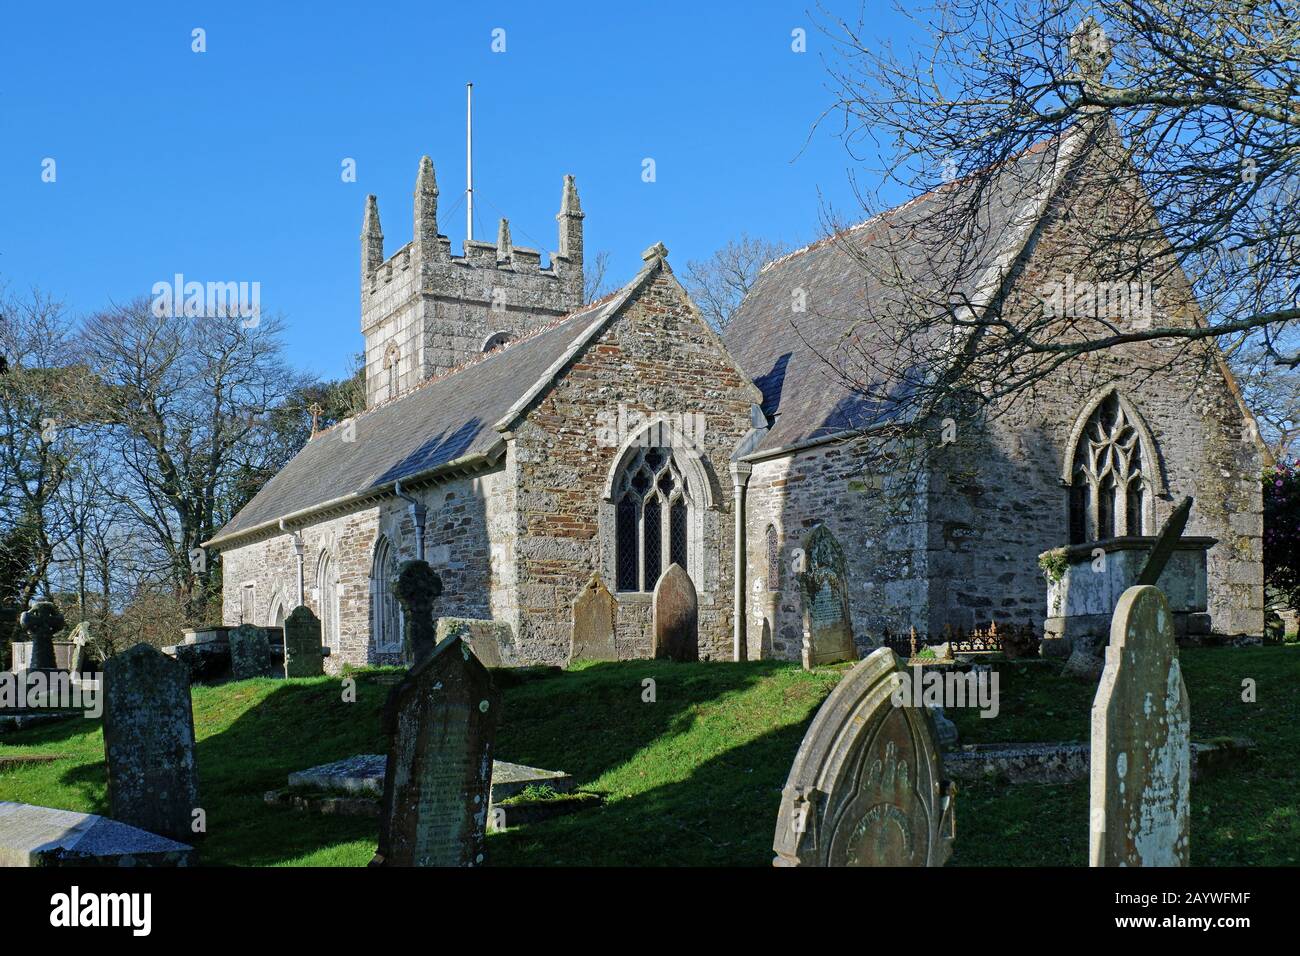 St. edwards katholische Kirche in Mawnan smith in cornwall, england, großbritannien Stockfoto